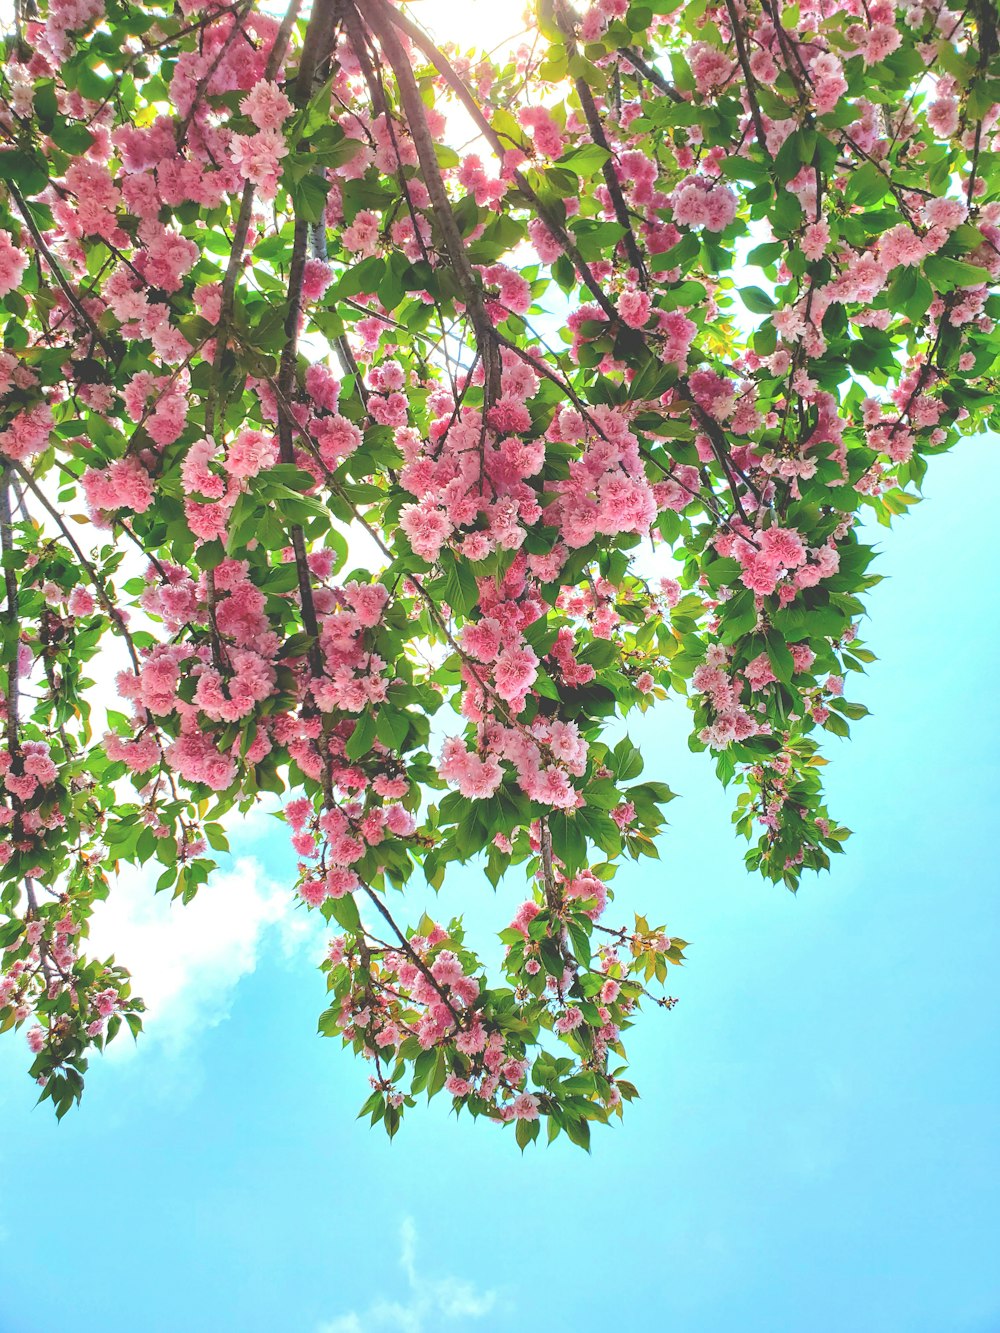 Rosa Blumen blühen auf den Zweigen eines Baumes